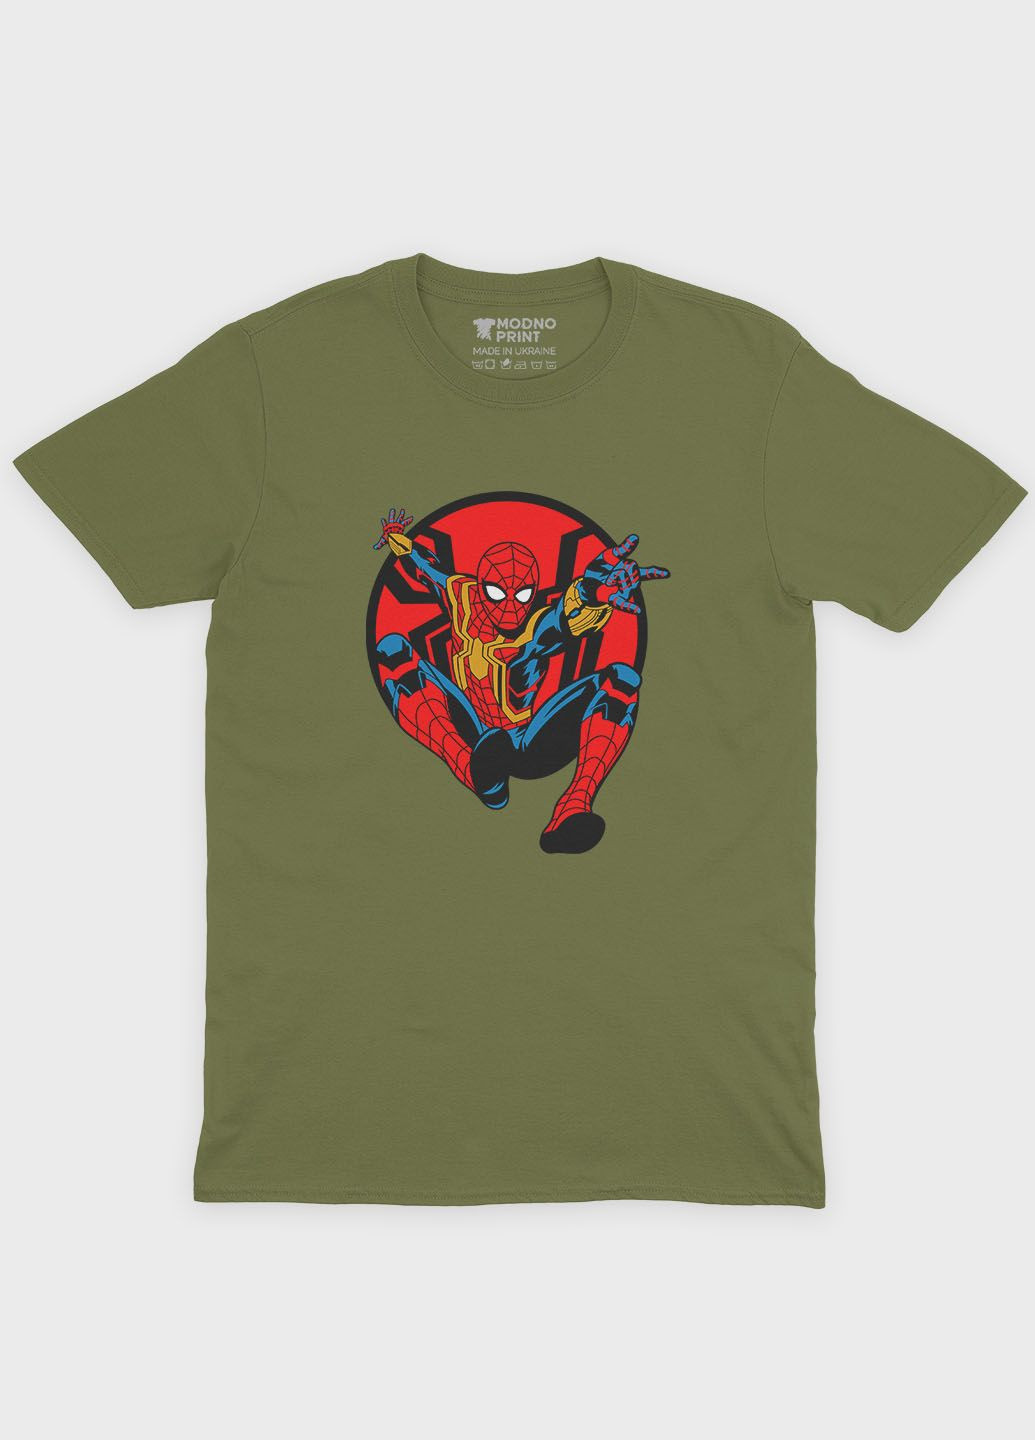 Хаки (оливковая) мужская футболка с принтом супергероя - человек-паук (ts001-1-hgr-006-014-075) Modno